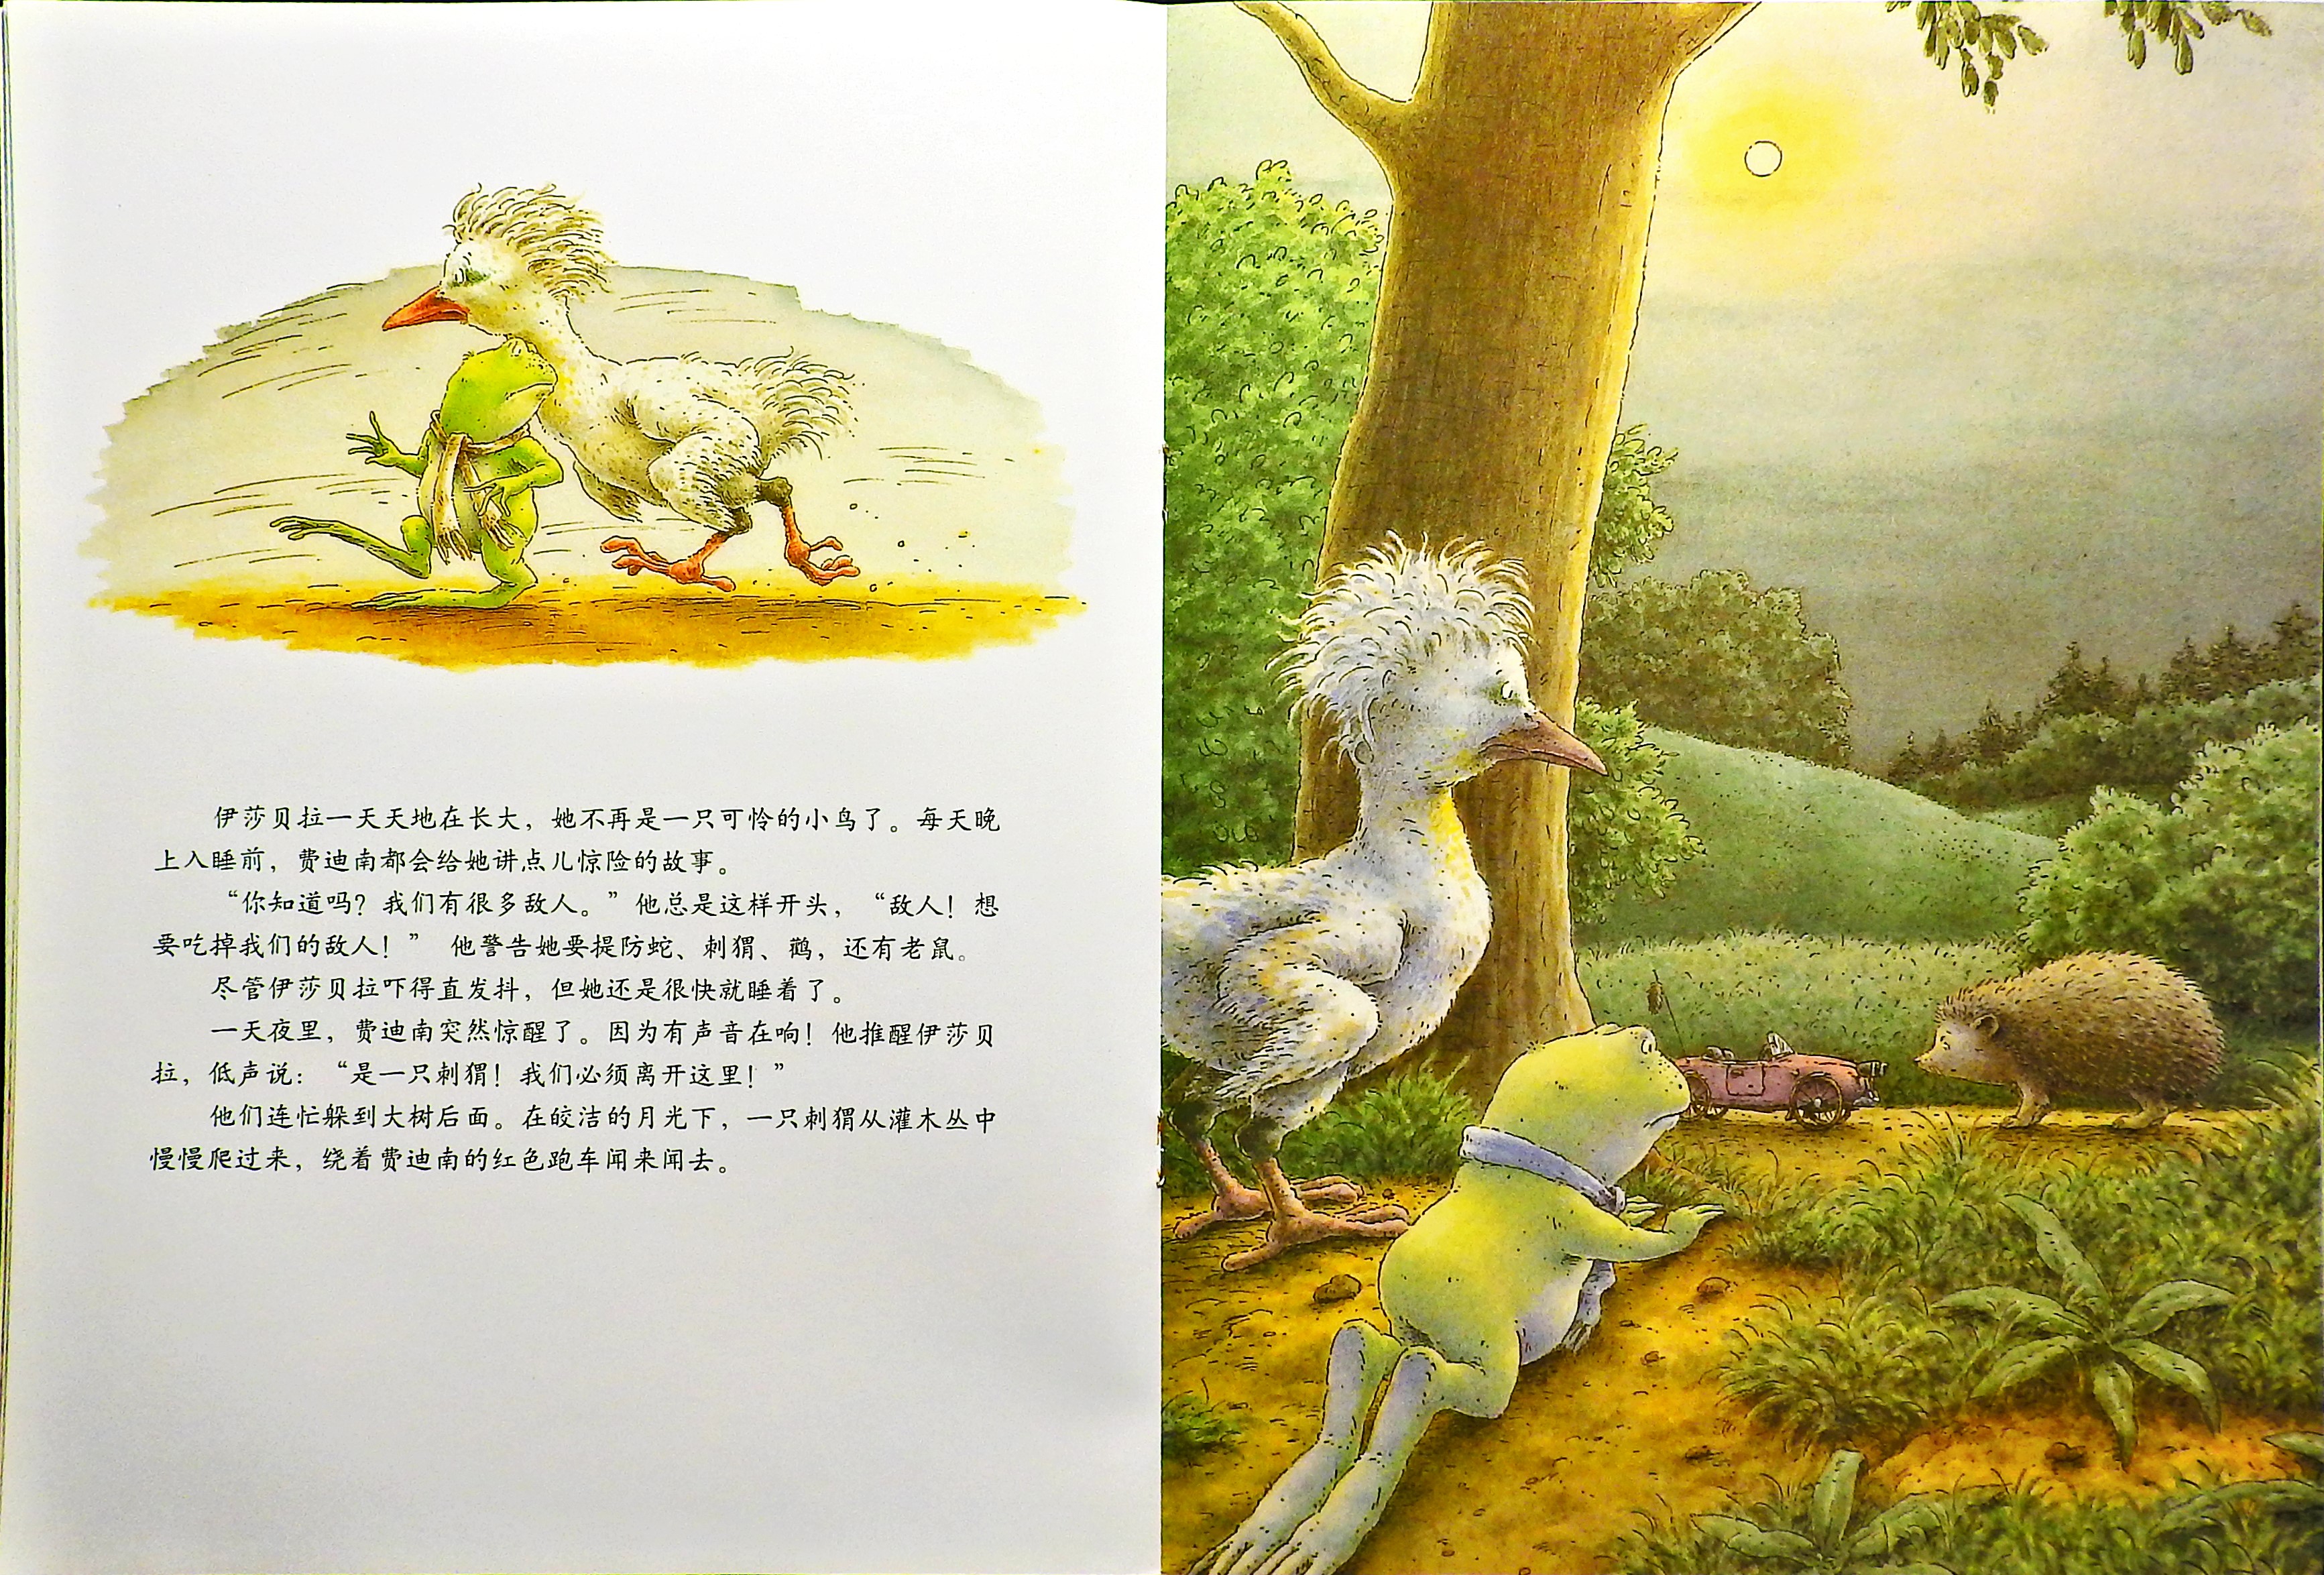 青蛙王子历险记 (09),绘本,绘本故事,绘本阅读,故事书,童书,图画书,课外阅读